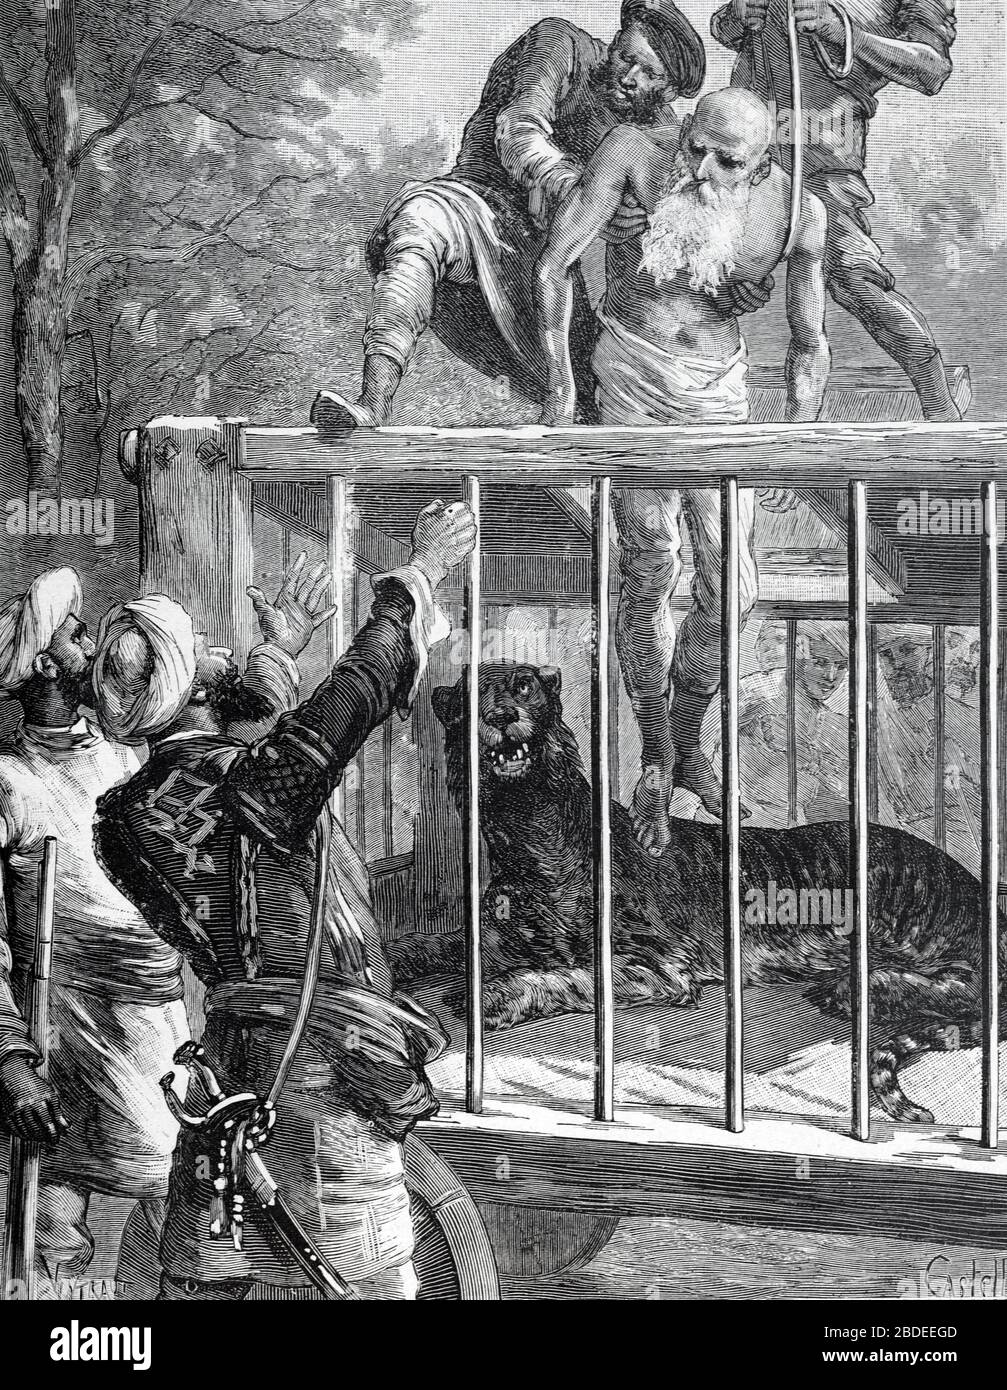 Sorcier indien, Saddhu ou Saint-Homme étant abaissé dans la cage du Lion Inde. Vintage ou ancienne illustration ou gravure 1887 Banque D'Images